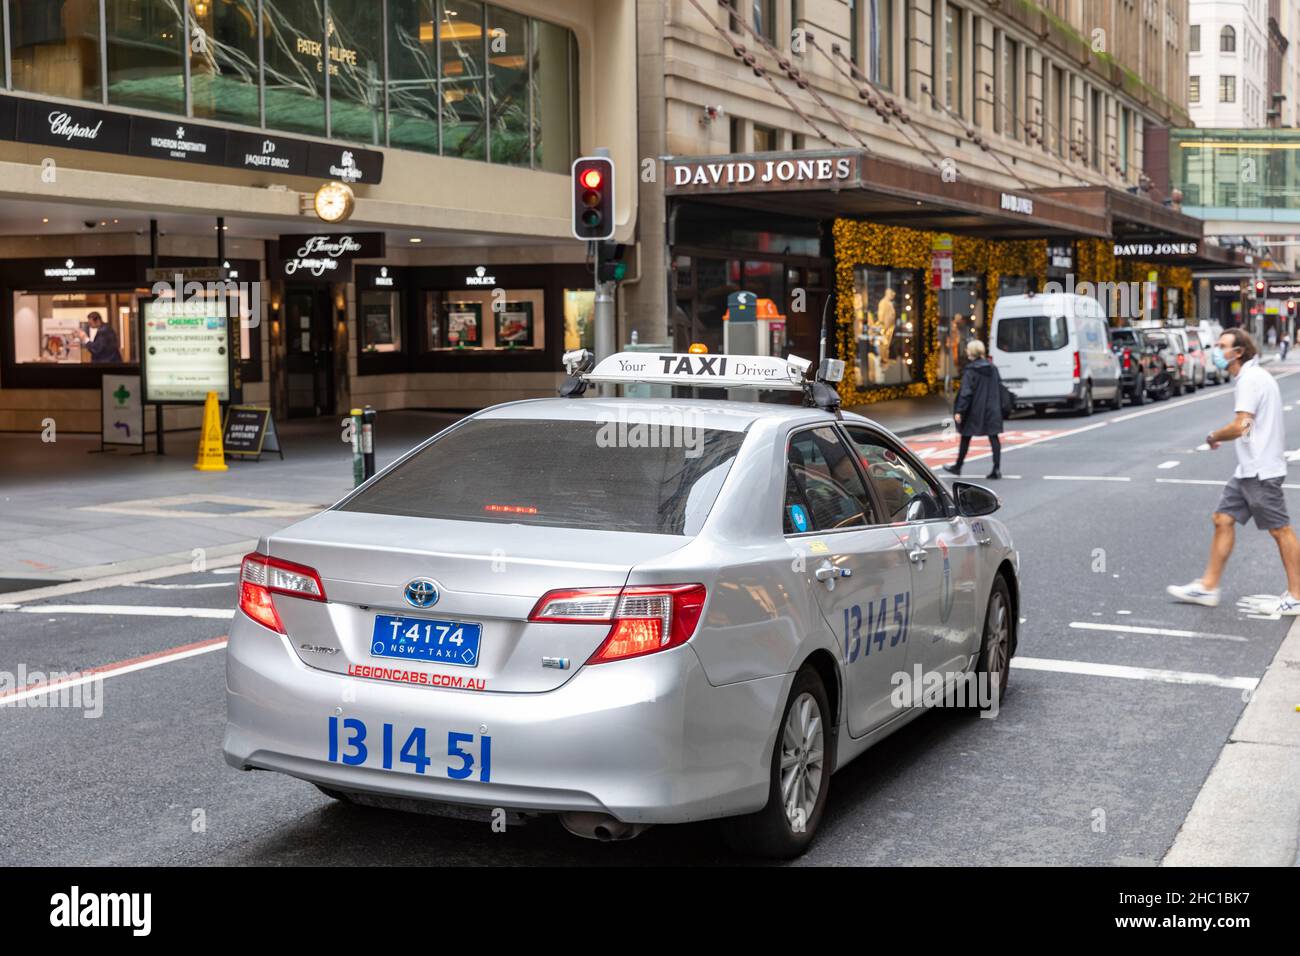 Taxi di Sydney, una macchina toyota, in Castlereagh Street nel centro di Sydney in direzione dei grandi magazzini David Jones, Sydney, Australia Foto Stock